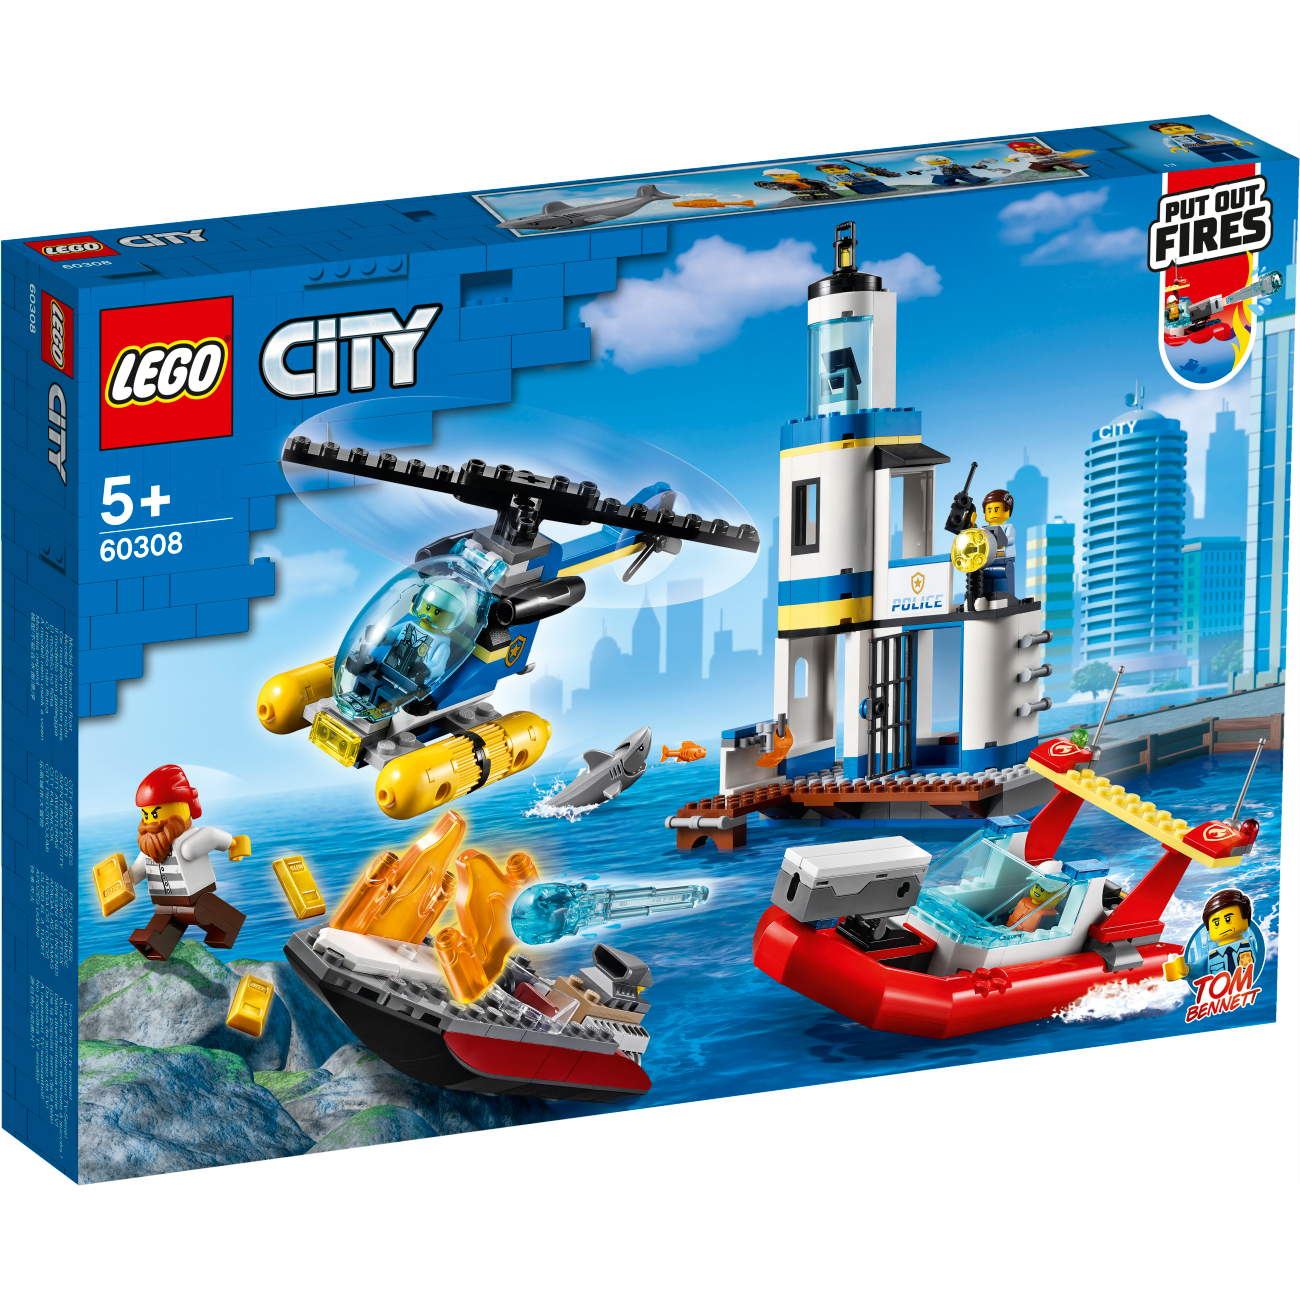 LEGO City 60308 - Polizei und Feuerwehr im Küsteneinsatz